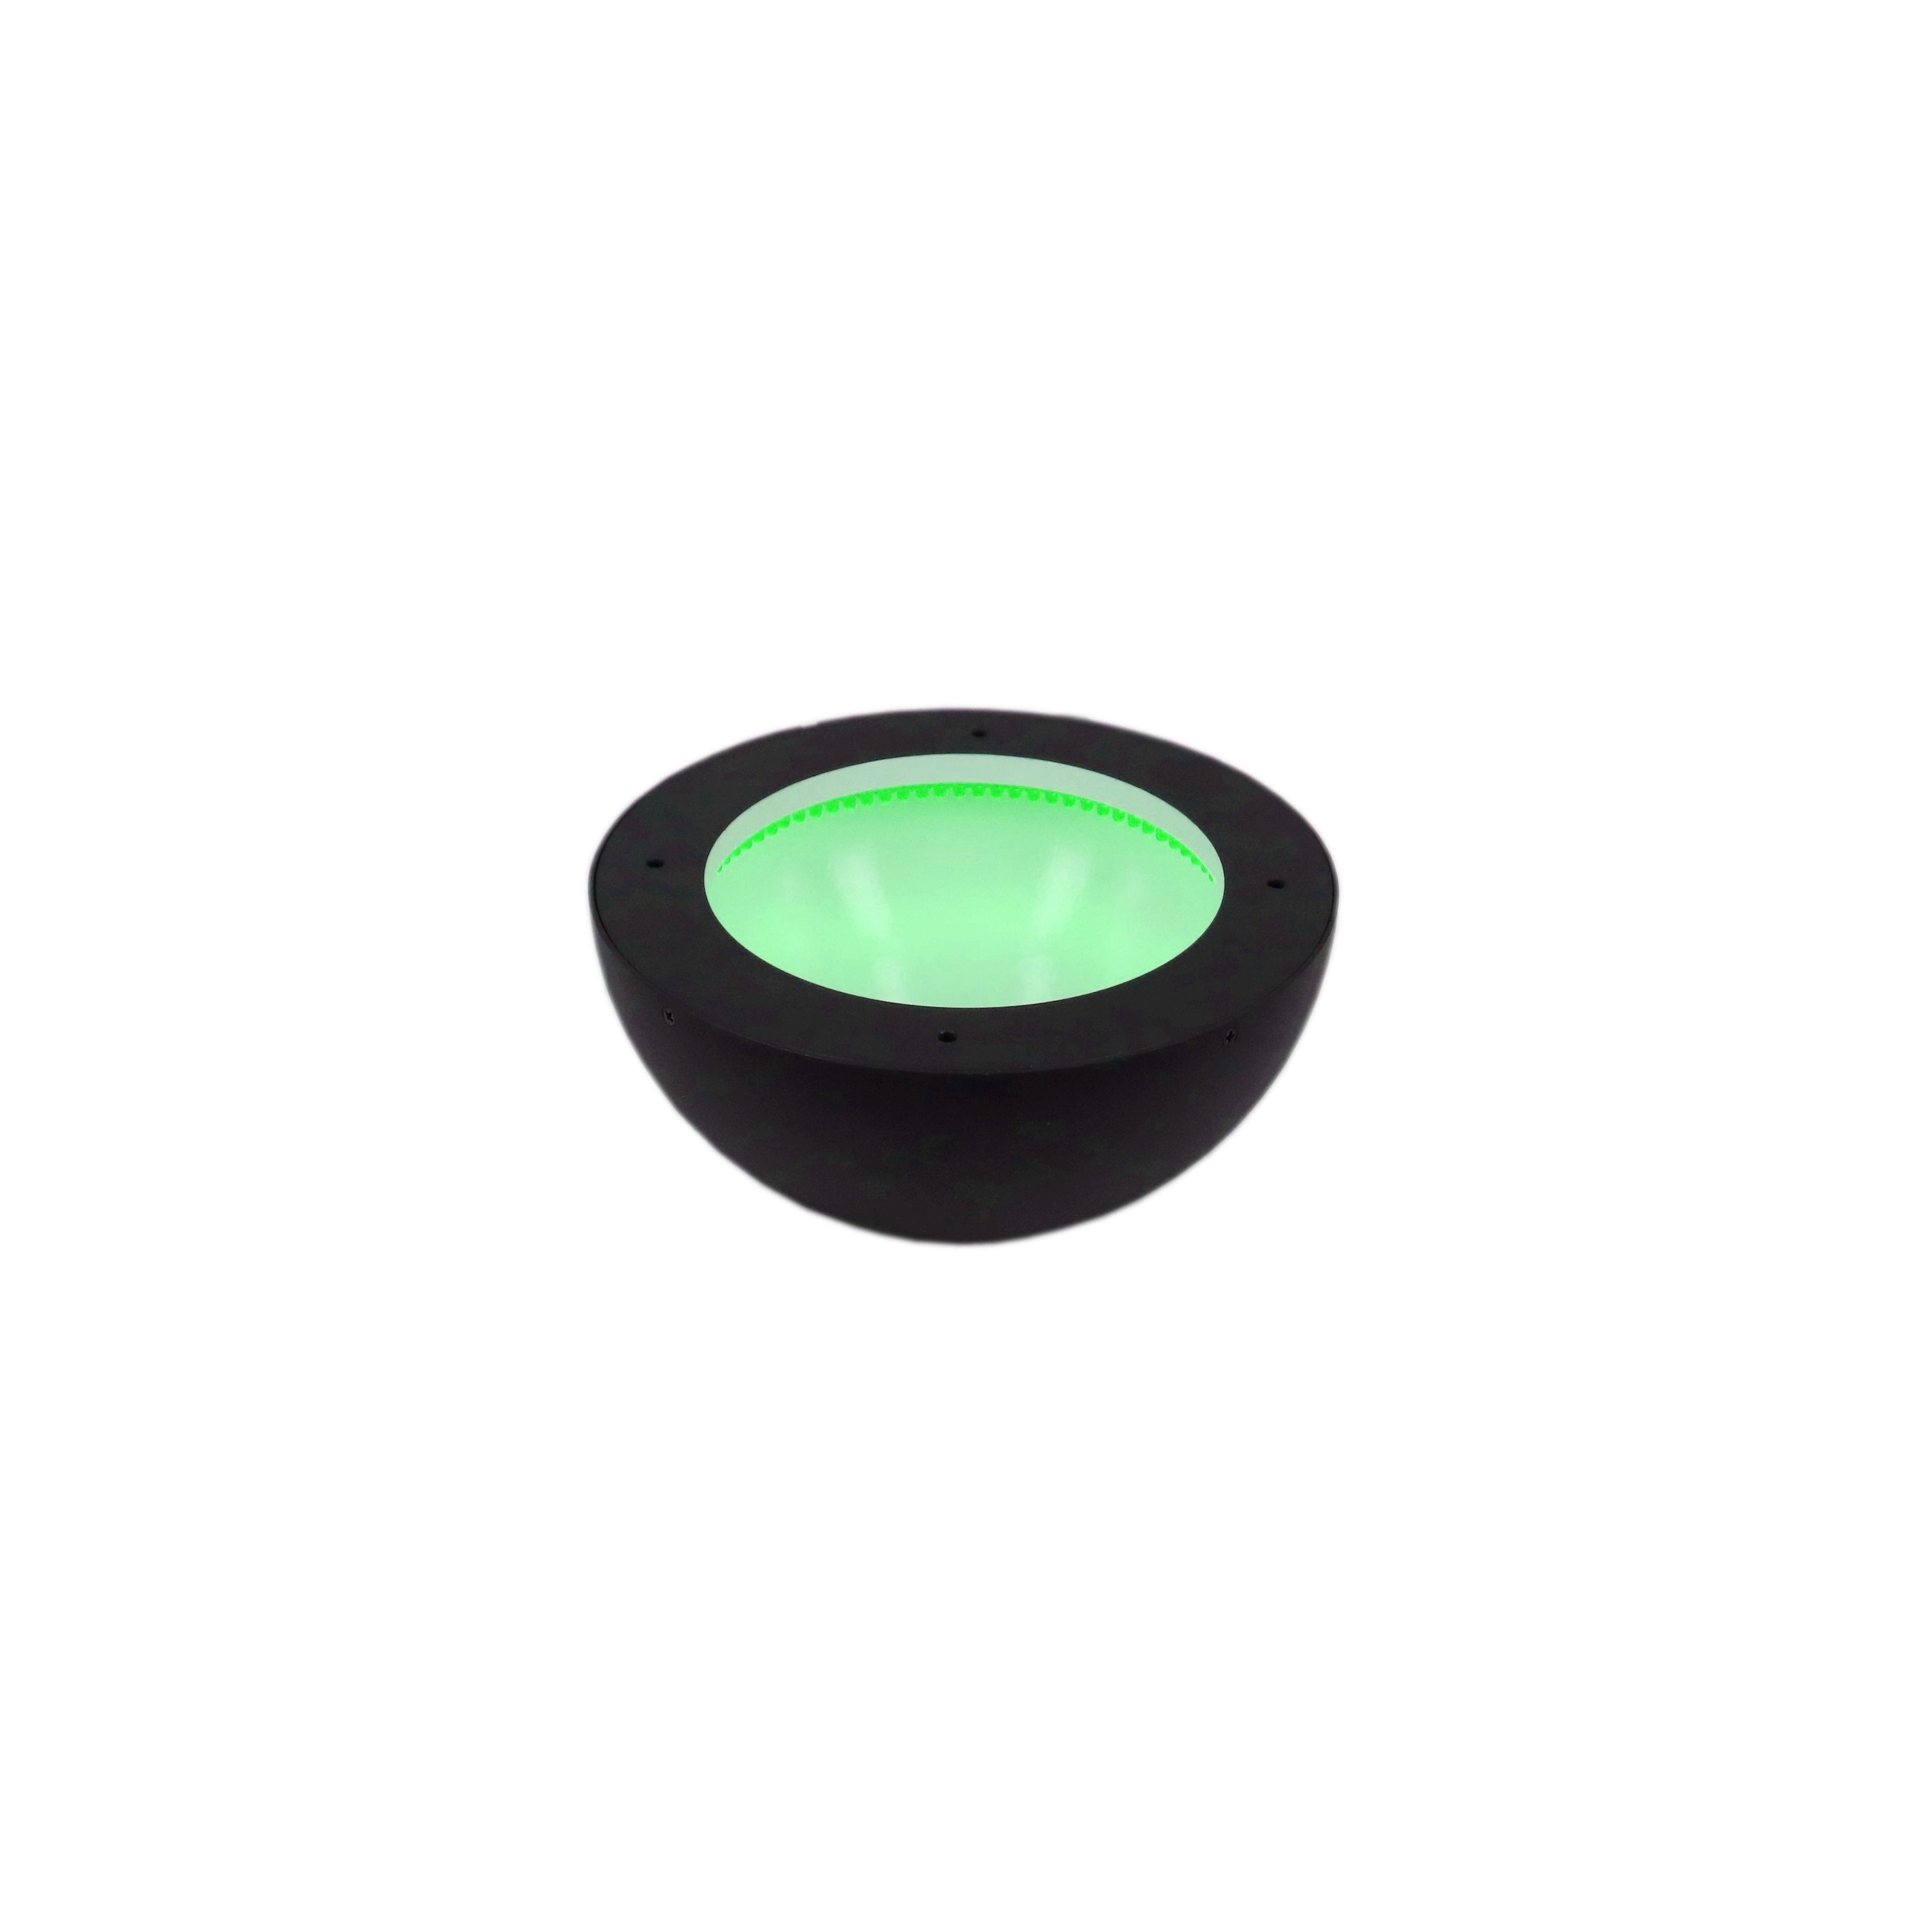 DO2-156108 Dome Illumination – Green